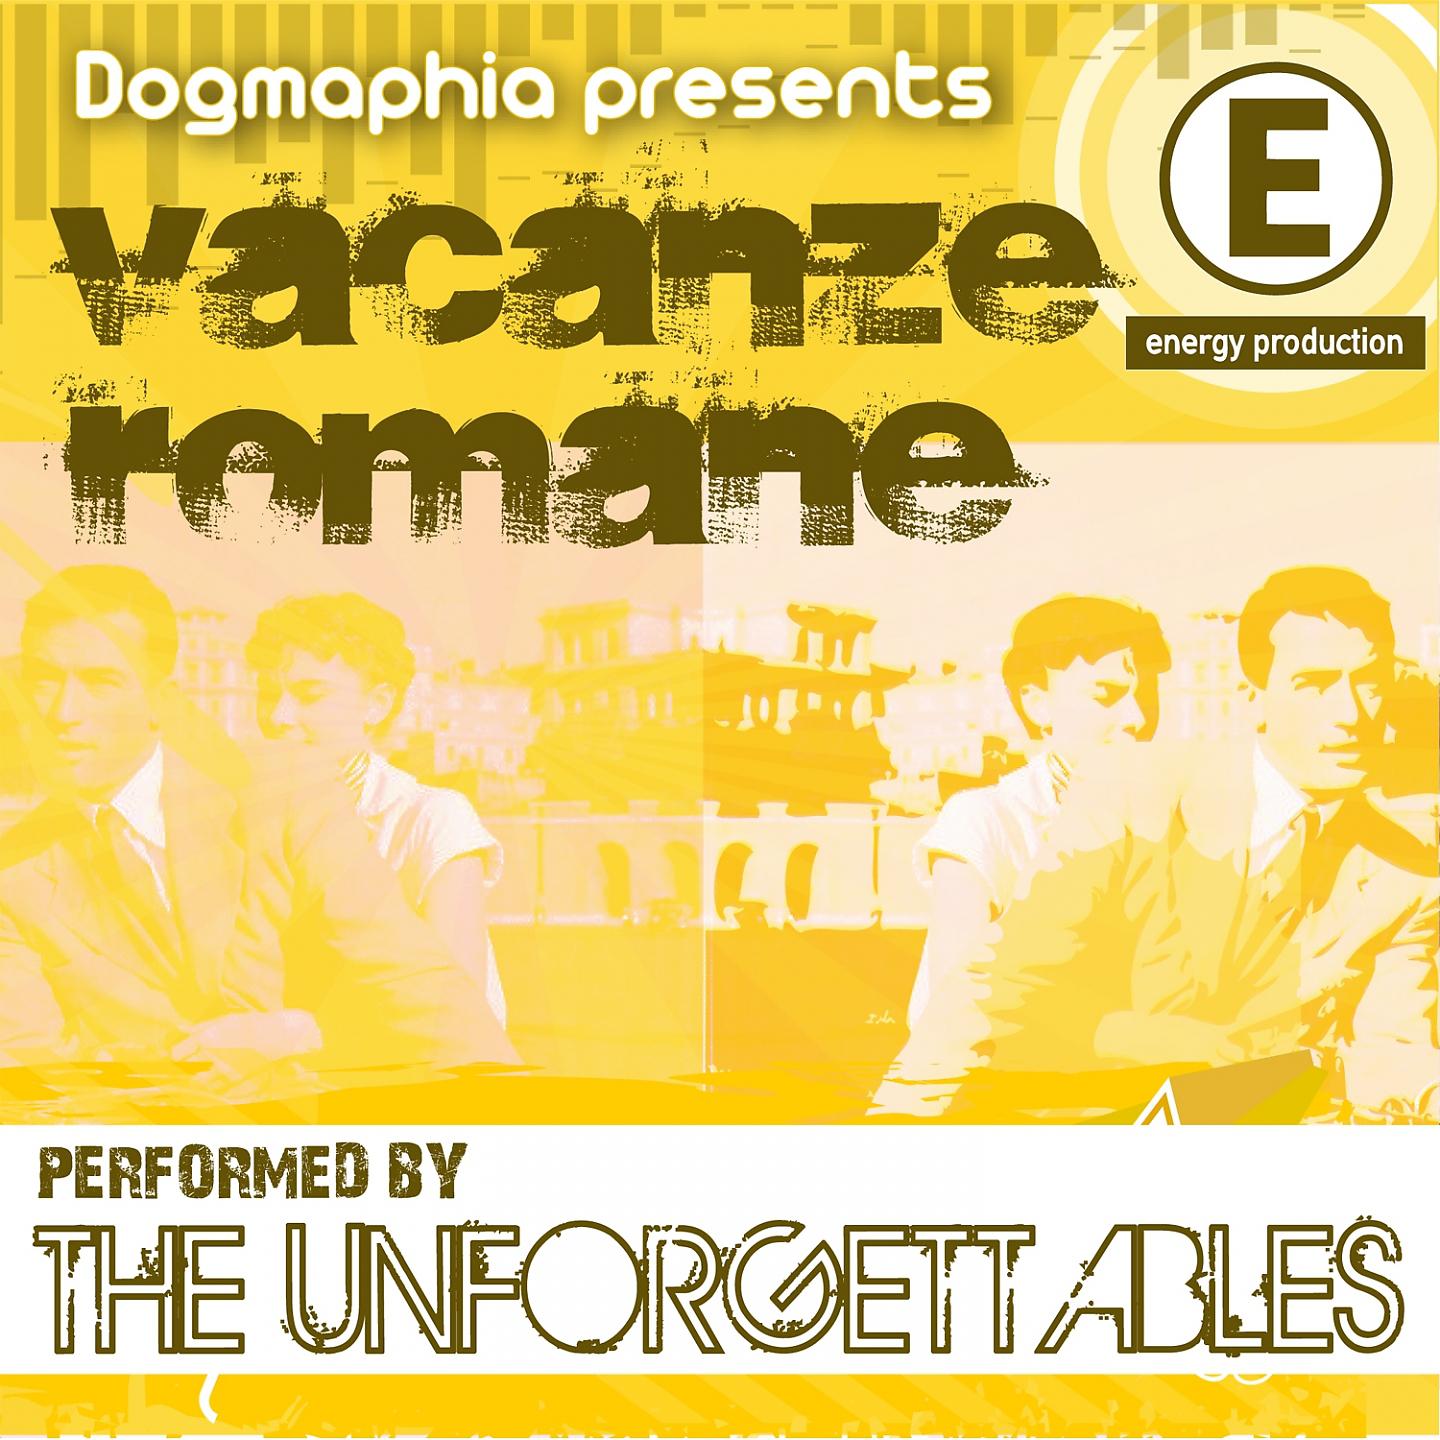 Постер альбома Vacanze romane